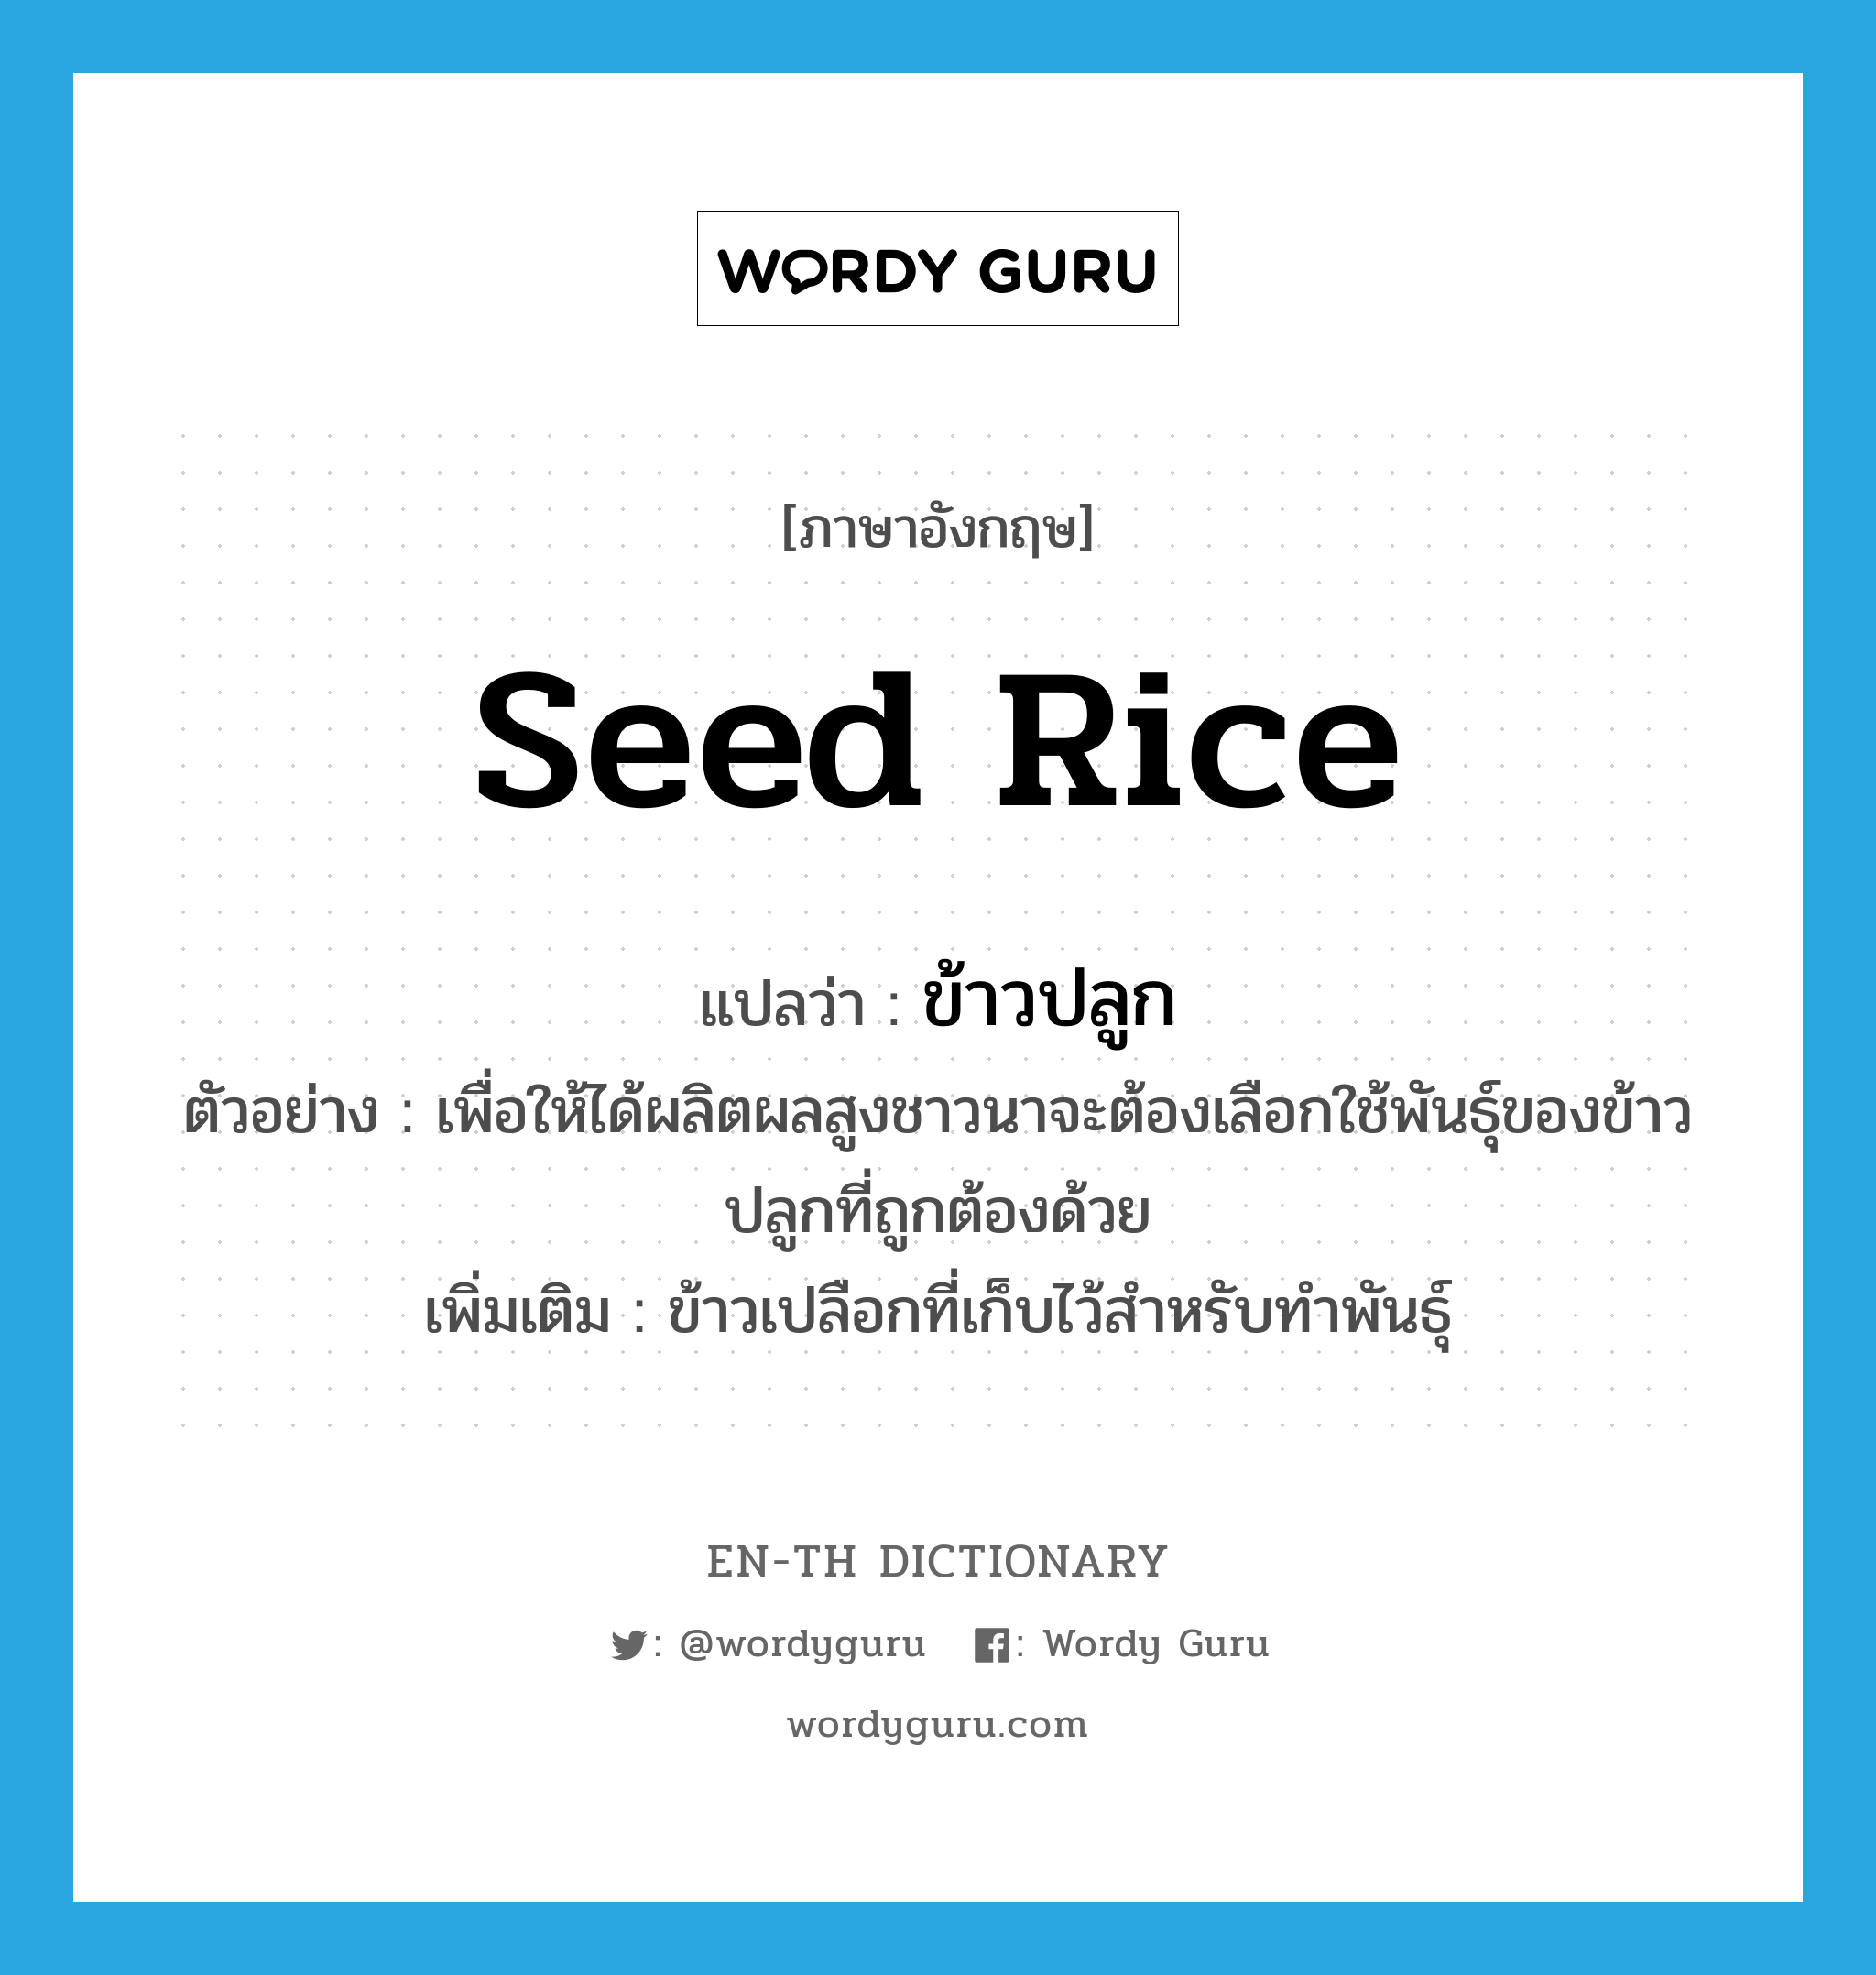 ข้าวปลูก ภาษาอังกฤษ?, คำศัพท์ภาษาอังกฤษ ข้าวปลูก แปลว่า seed rice ประเภท N ตัวอย่าง เพื่อให้ได้ผลิตผลสูงชาวนาจะต้องเลือกใช้พันธุ์ของข้าวปลูกที่ถูกต้องด้วย เพิ่มเติม ข้าวเปลือกที่เก็บไว้สำหรับทำพันธุ์ หมวด N